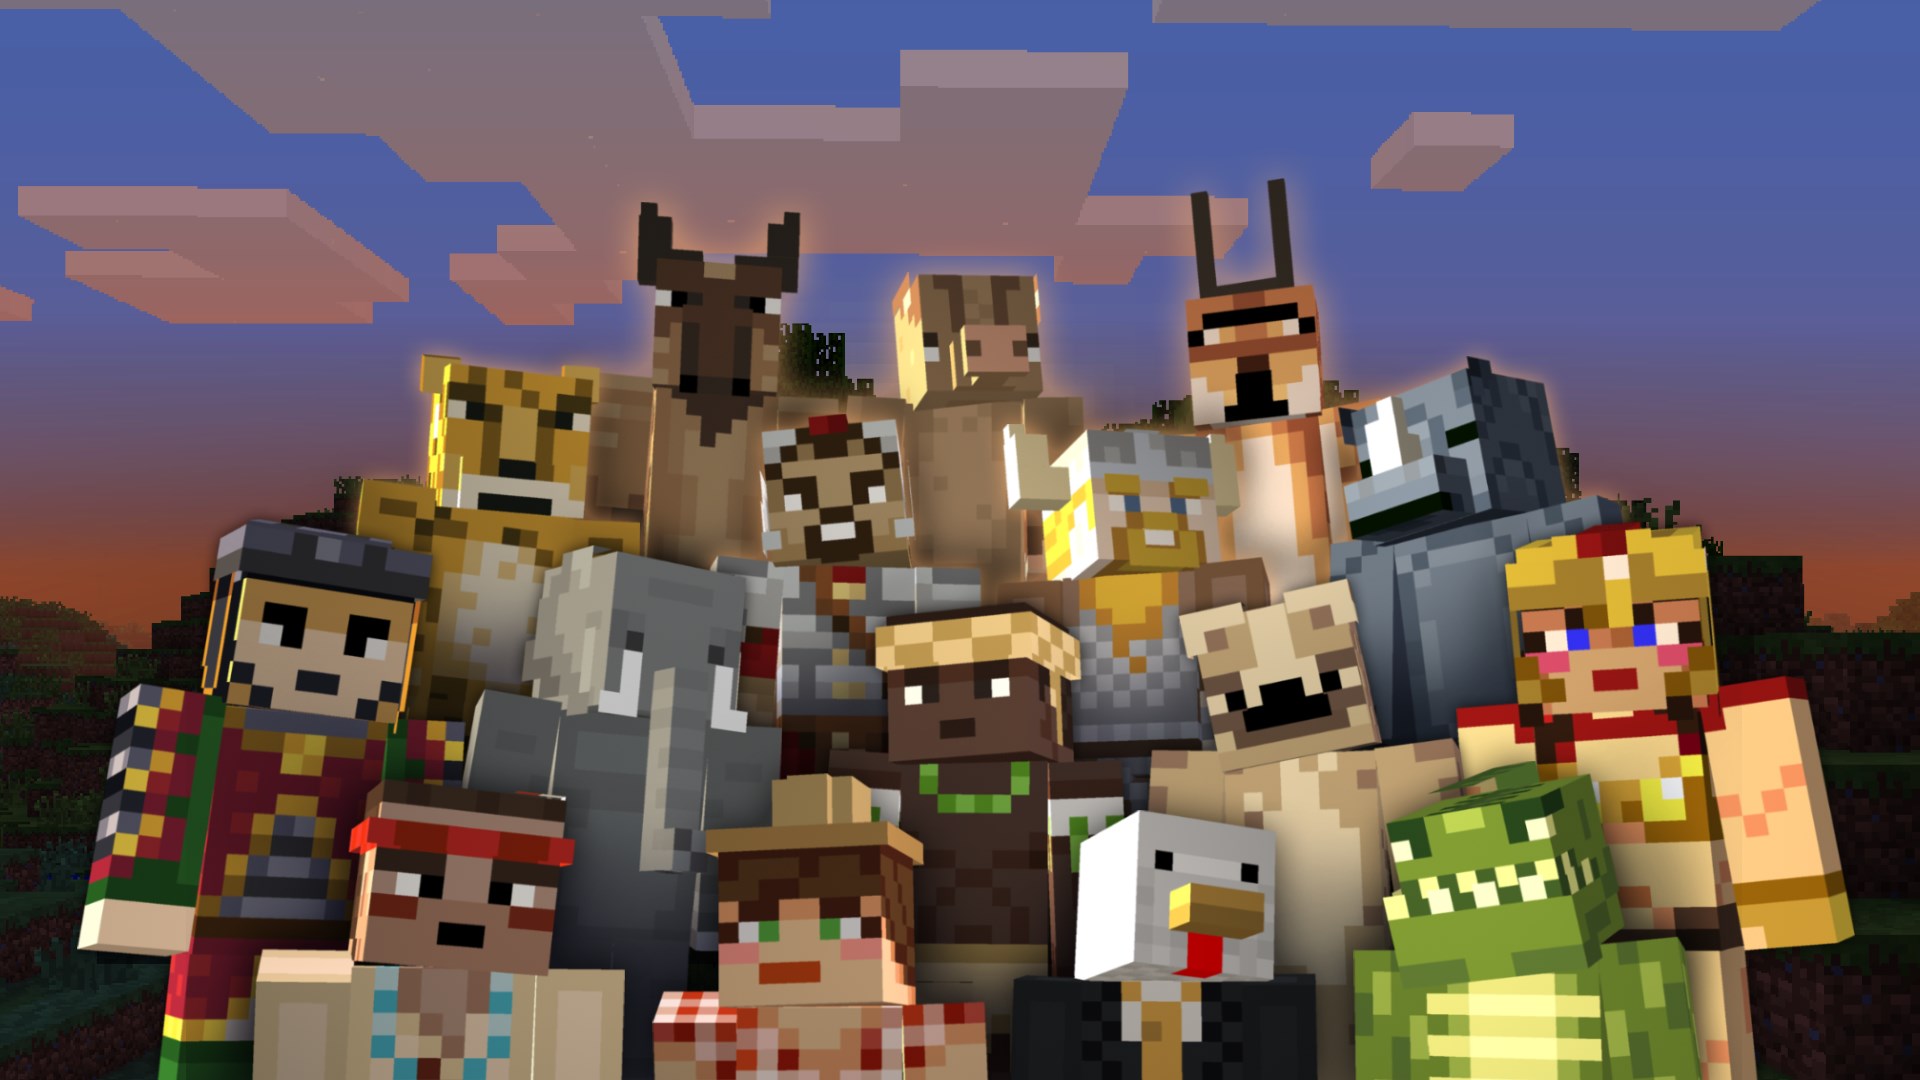 Minecraft: Battle & Beasts 2 Skin Pack